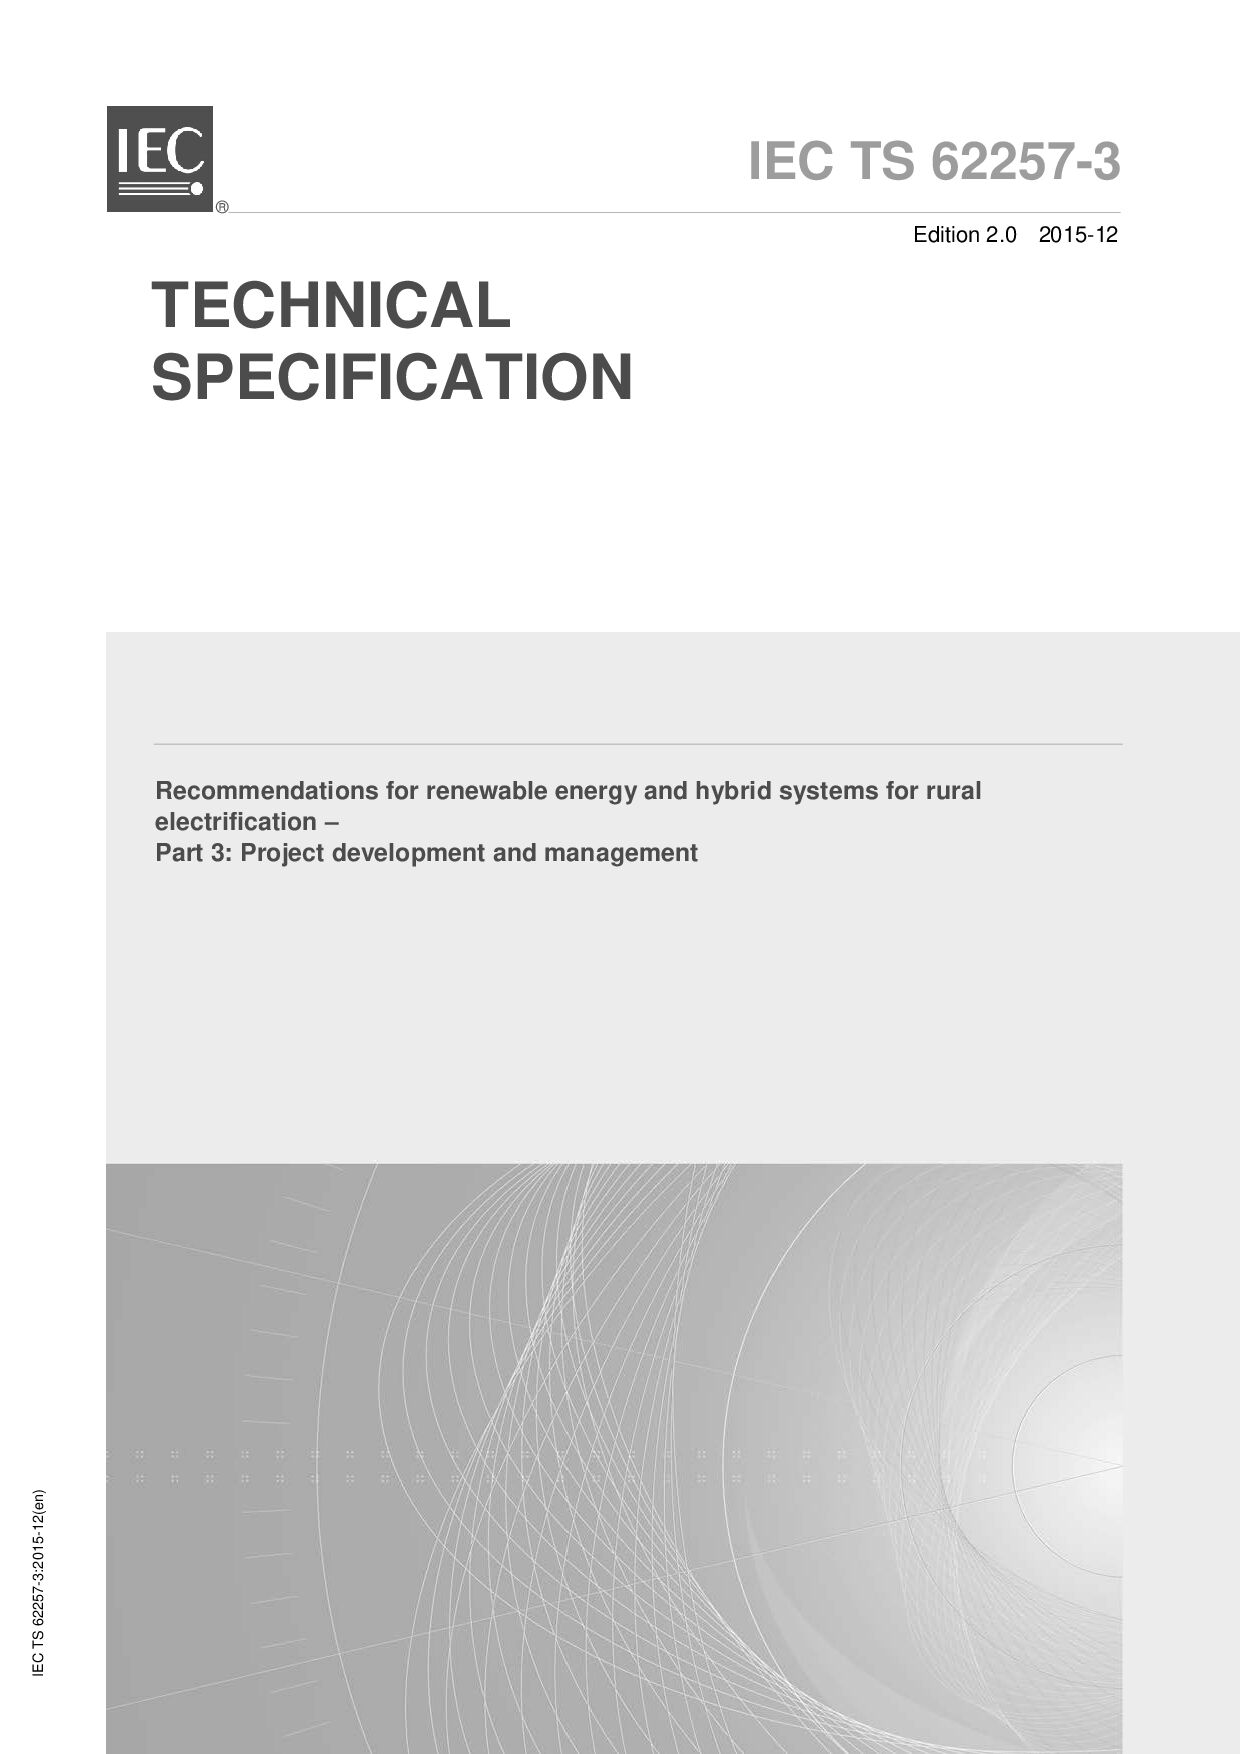 IEC TS 62257-3:2015